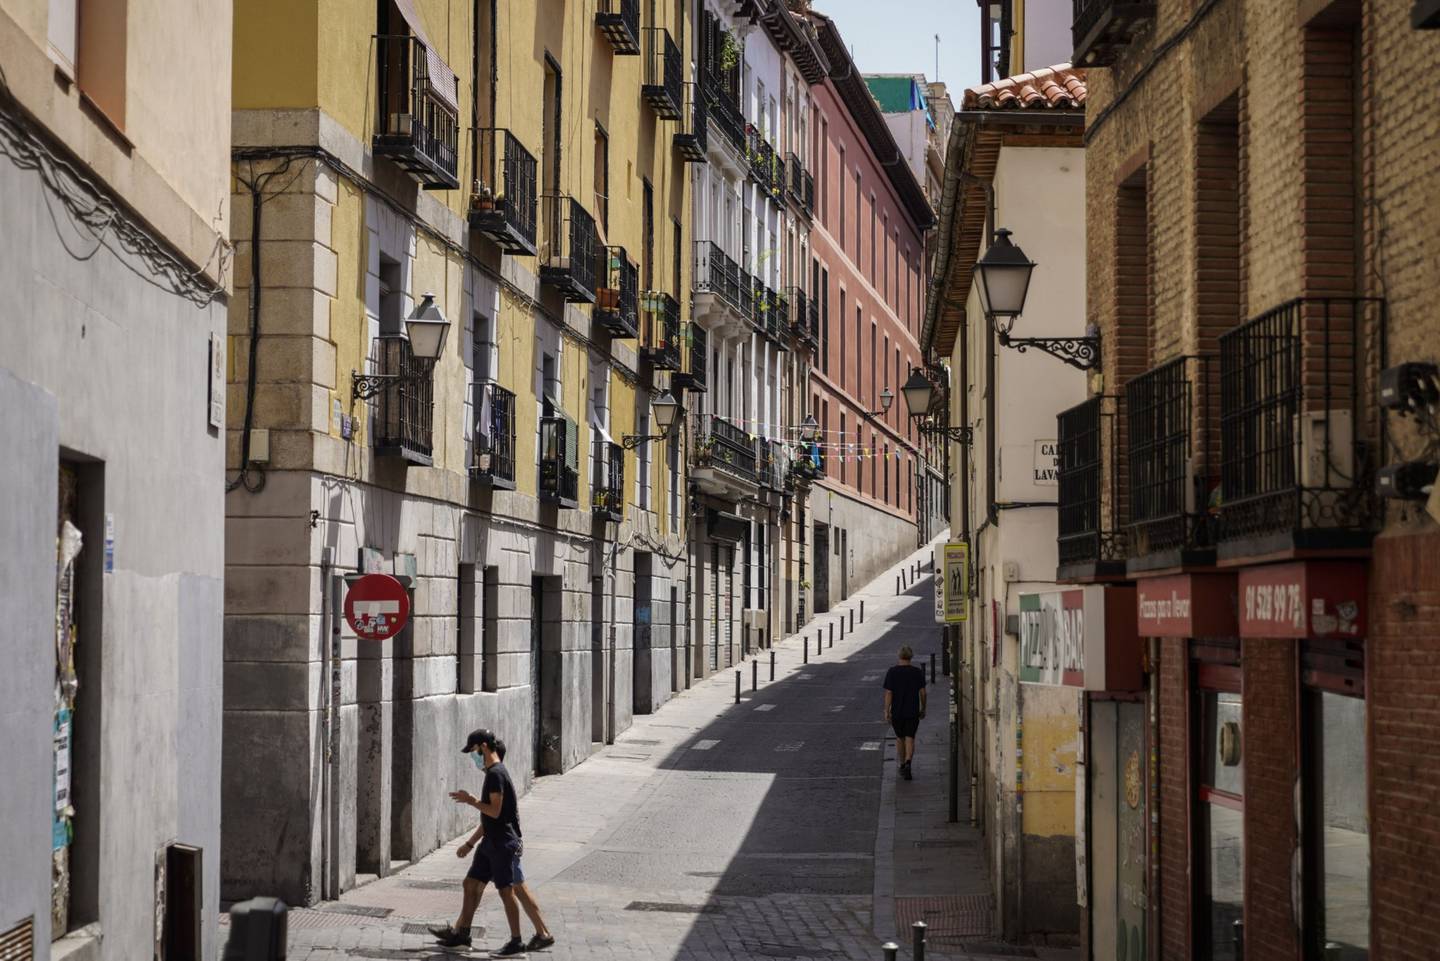 Bloques de apartamentos residenciales se alinean en una calle en el barrio de Lavapiés de Madrid, España, el jueves 25 de junio de 2020. Fotógrafo: Paul Hanna/Bloomberg